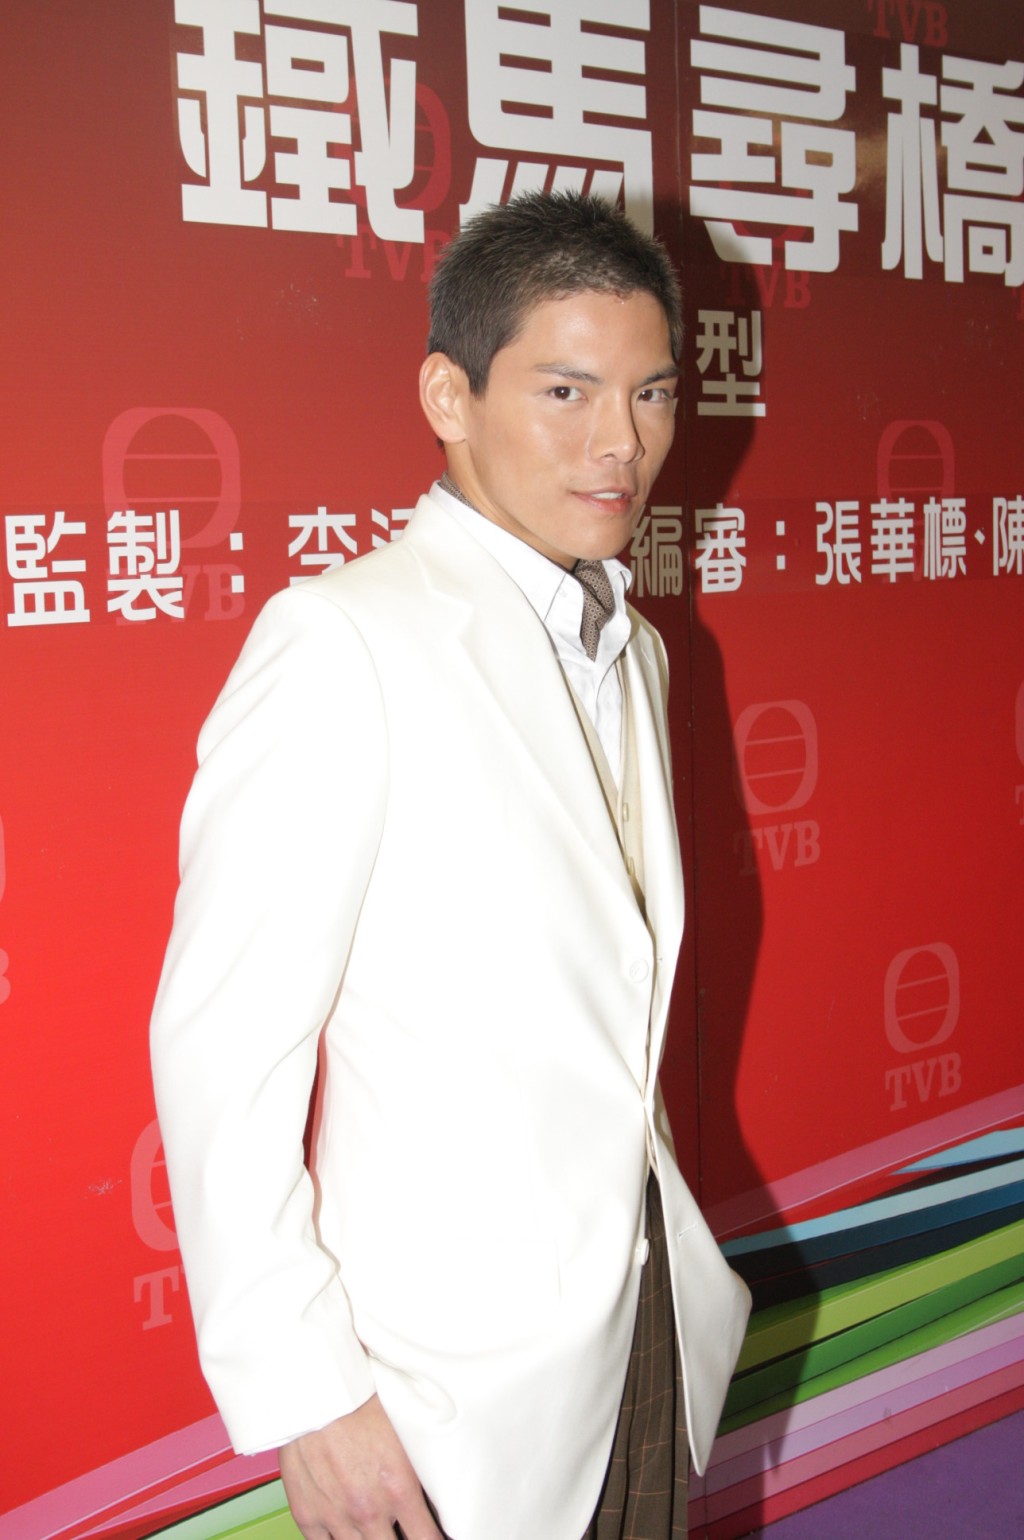 向佐曾經拍過TVB劇集。